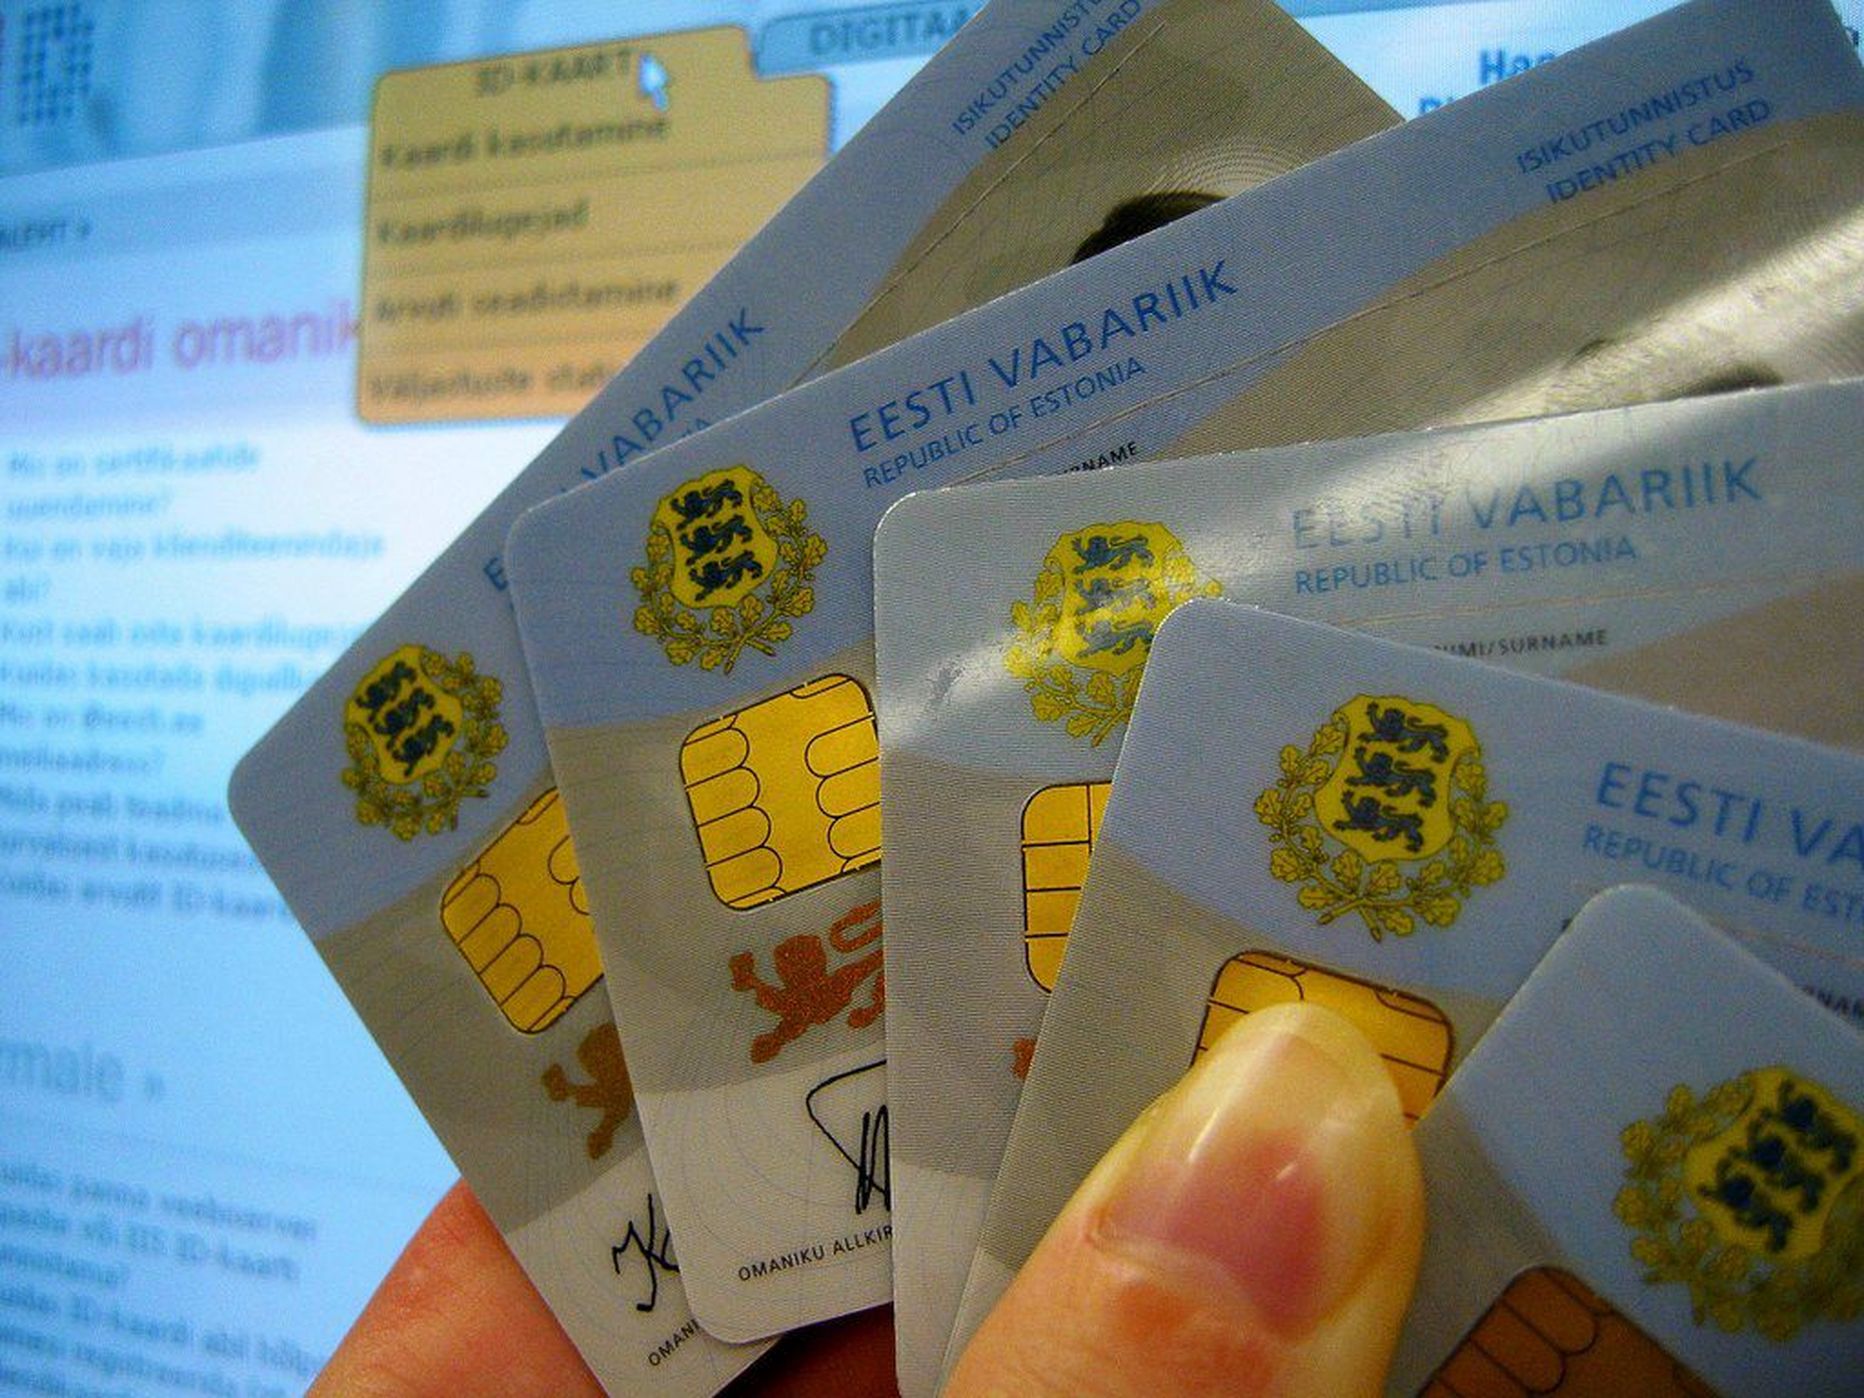 Eestis aegub aastas umbes 160 000 ID-kaarti.